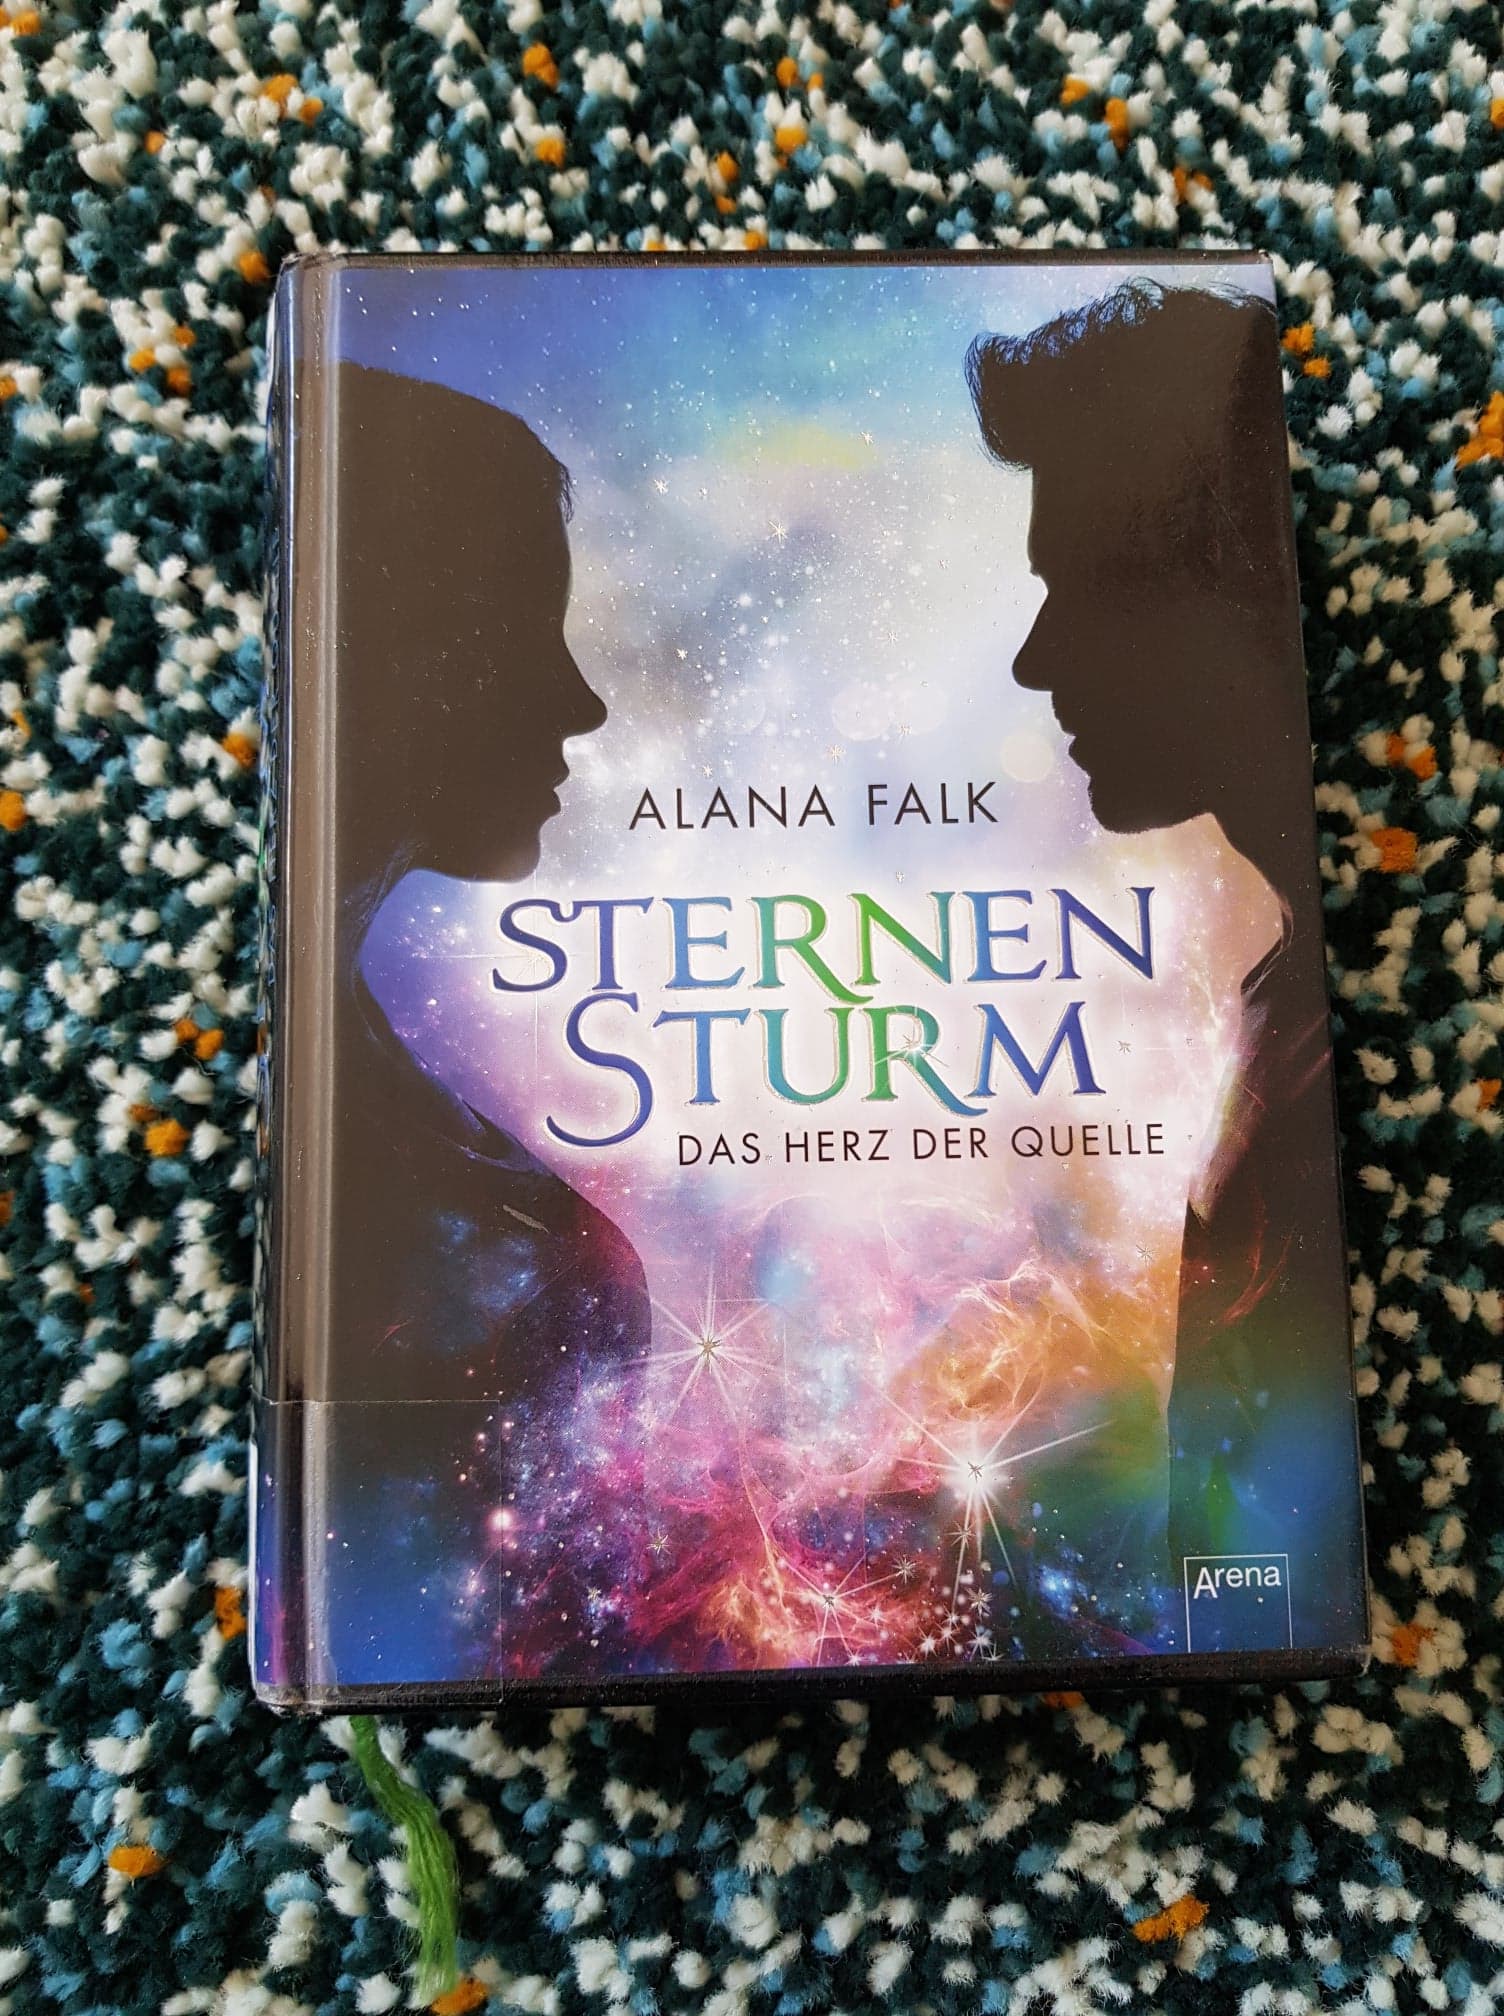 Das Buch "Sternensturm: Das Herz der Quelle" von Alana Falk